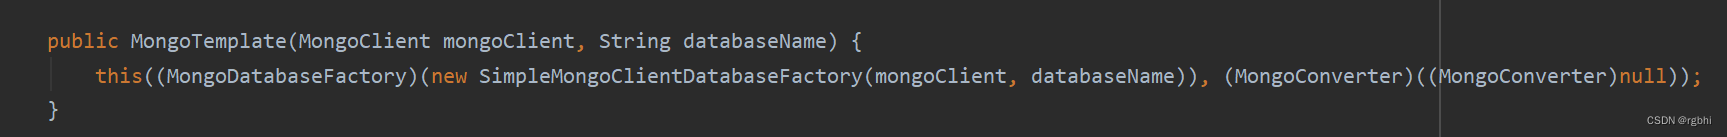 springboot MongoDB 主从 多数据源